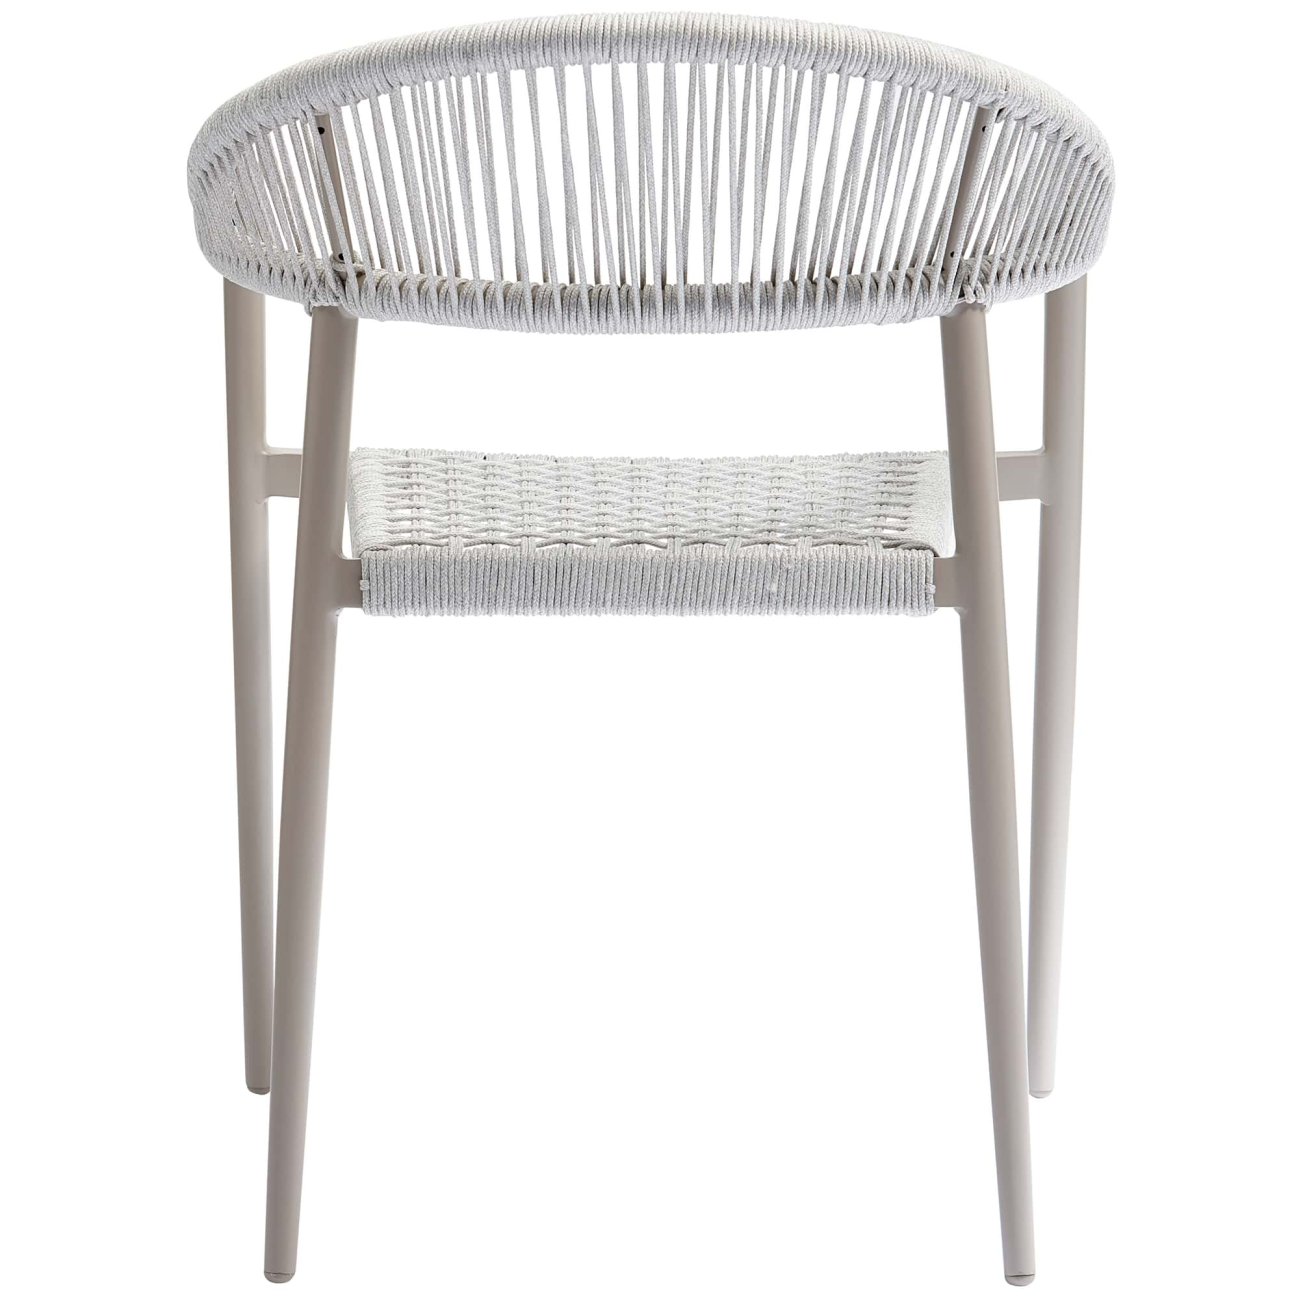 Der Gartenstuhl Yellow überzeugt mit seinem modernen Design. Gefertigt wurde er aus geflochtenem Seil, welches einen hellgrauen Farbton besitzt. Das Gestell ist aus Aluminium und hat eine hellgraue Farbe. Der Stuhl besitzt eine Sitzhöhe von 45 cm.